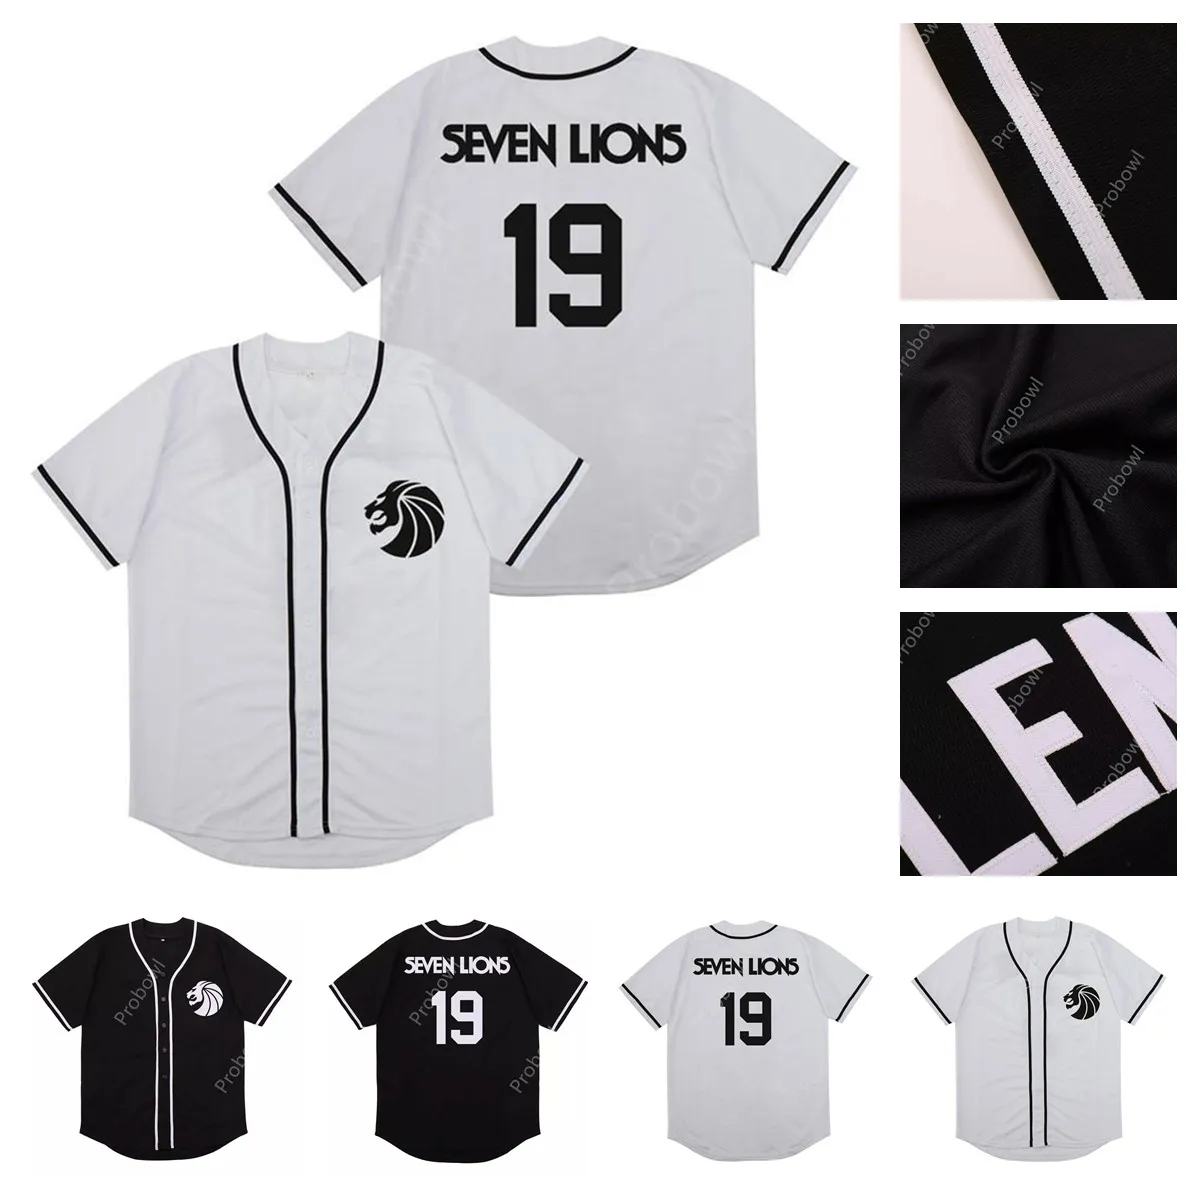 Maillot de Baseball pour hommes, maillot de Baseball Seven Lions 19 Dj Illenium, blanc, cousu, édition à la mode